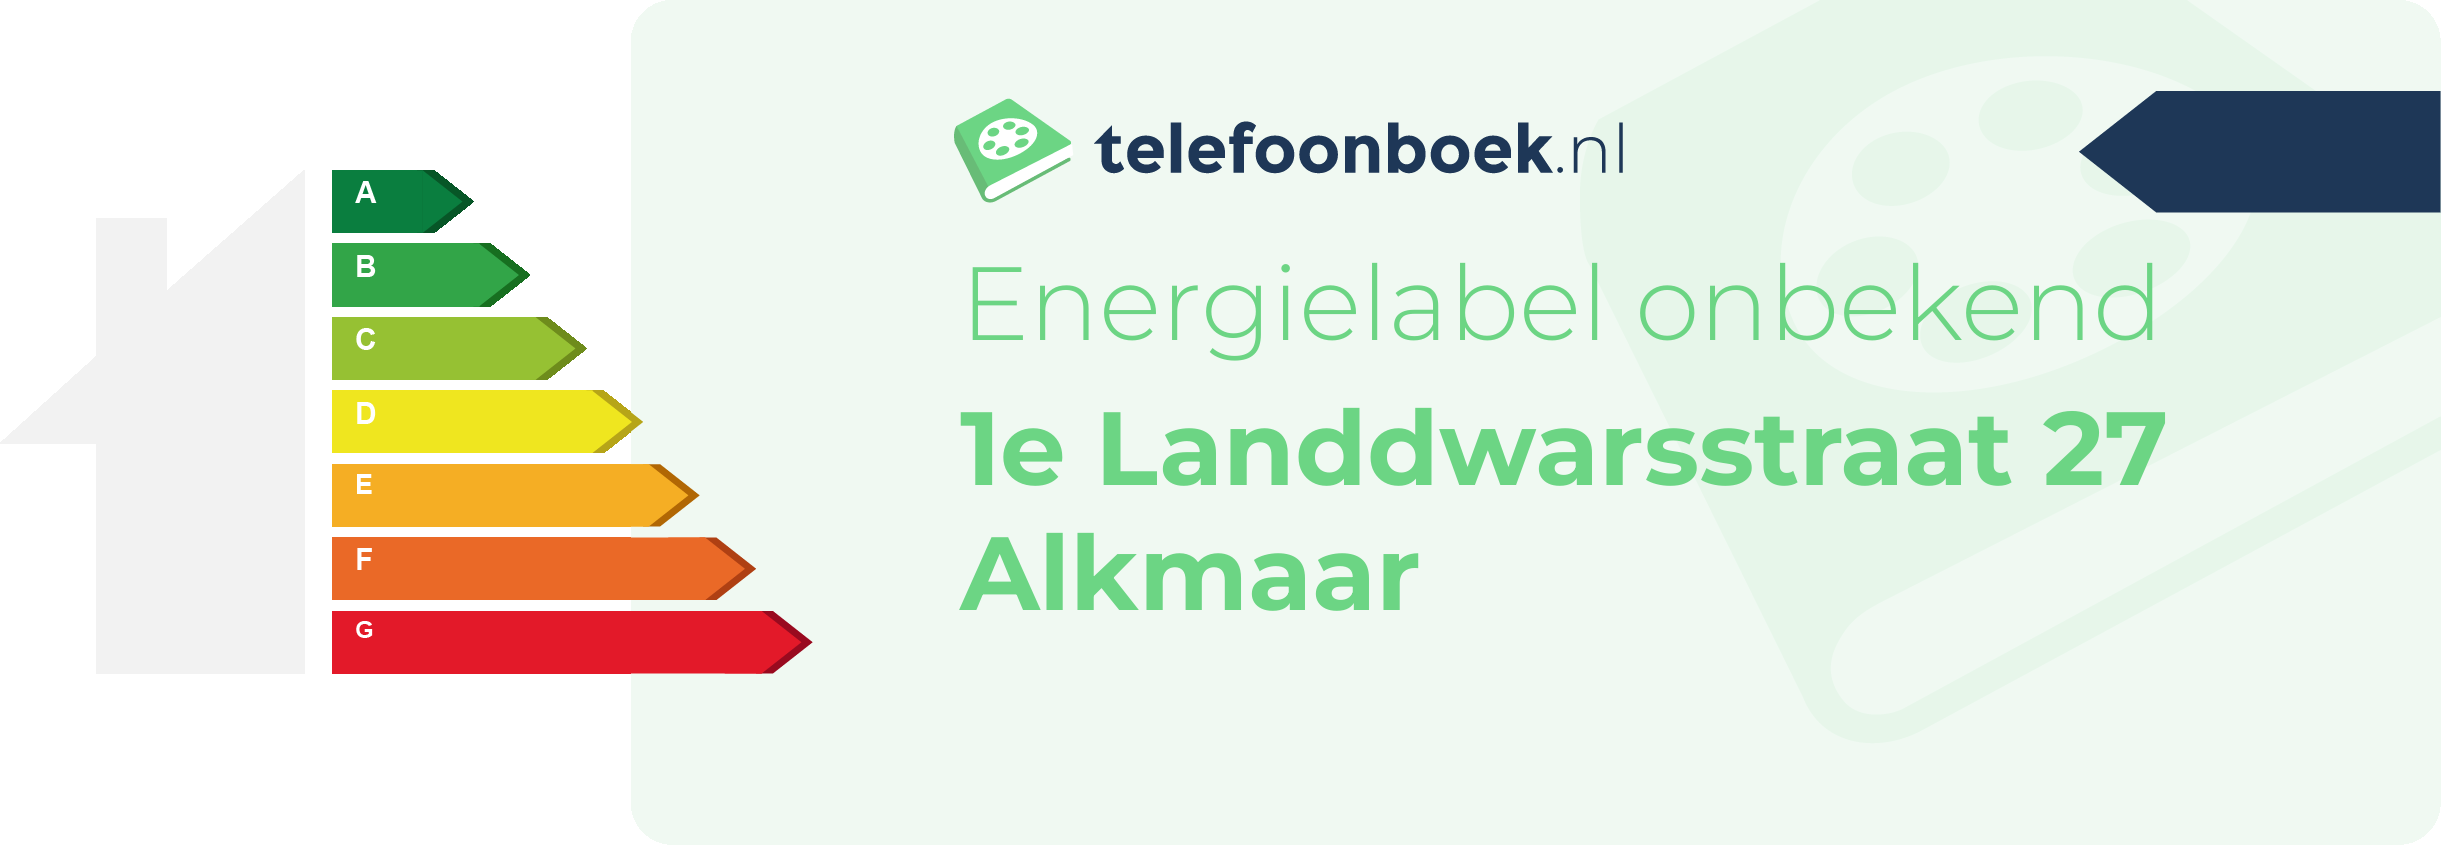 Energielabel 1e Landdwarsstraat 27 Alkmaar